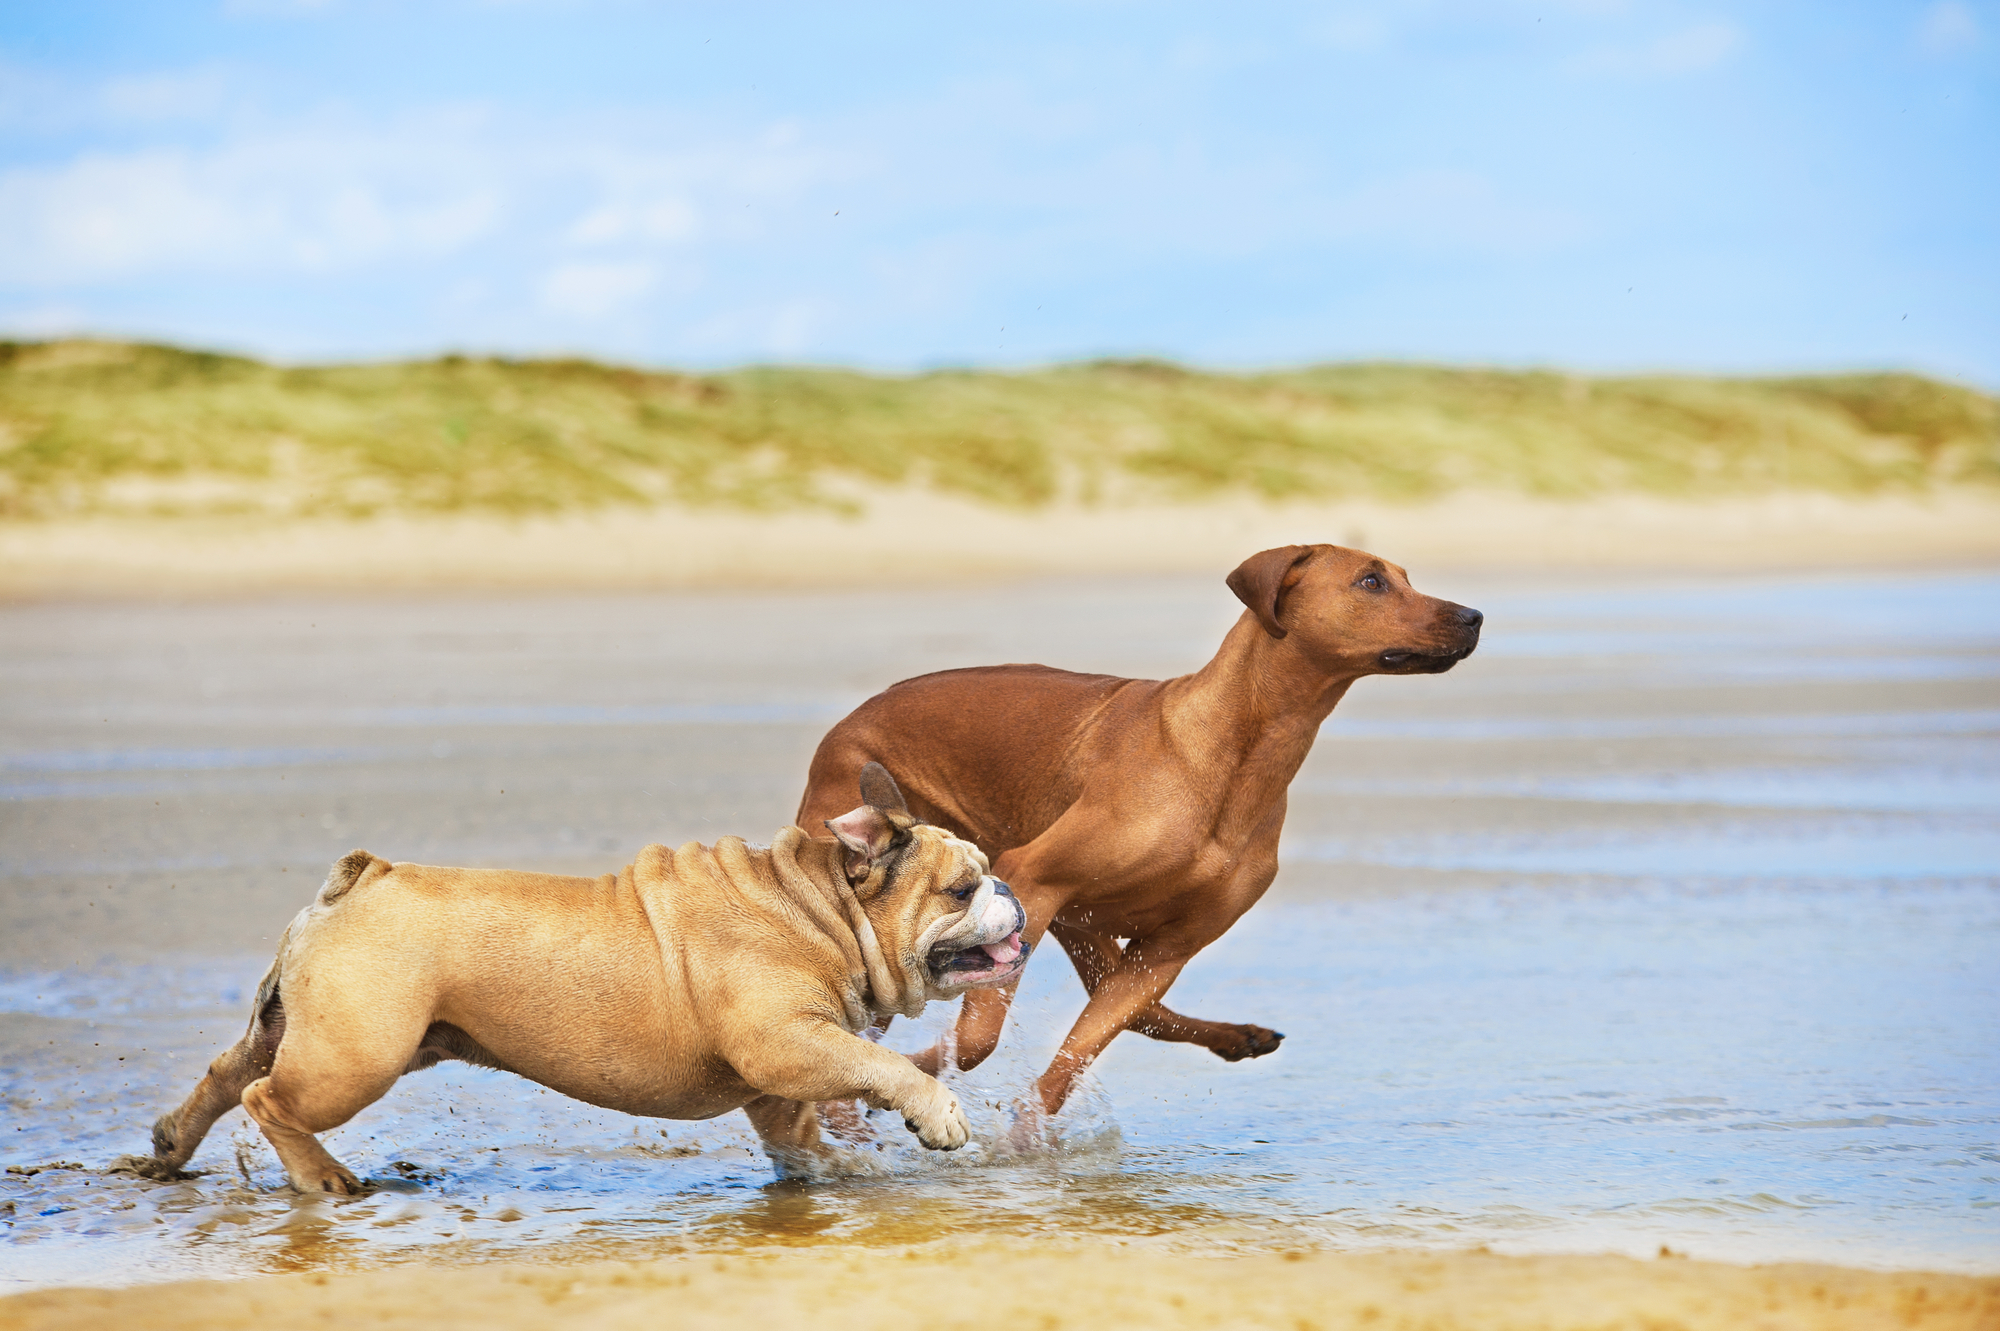 5 dolog, amire felelős kutyatartóként figyelnünk kell a strandon